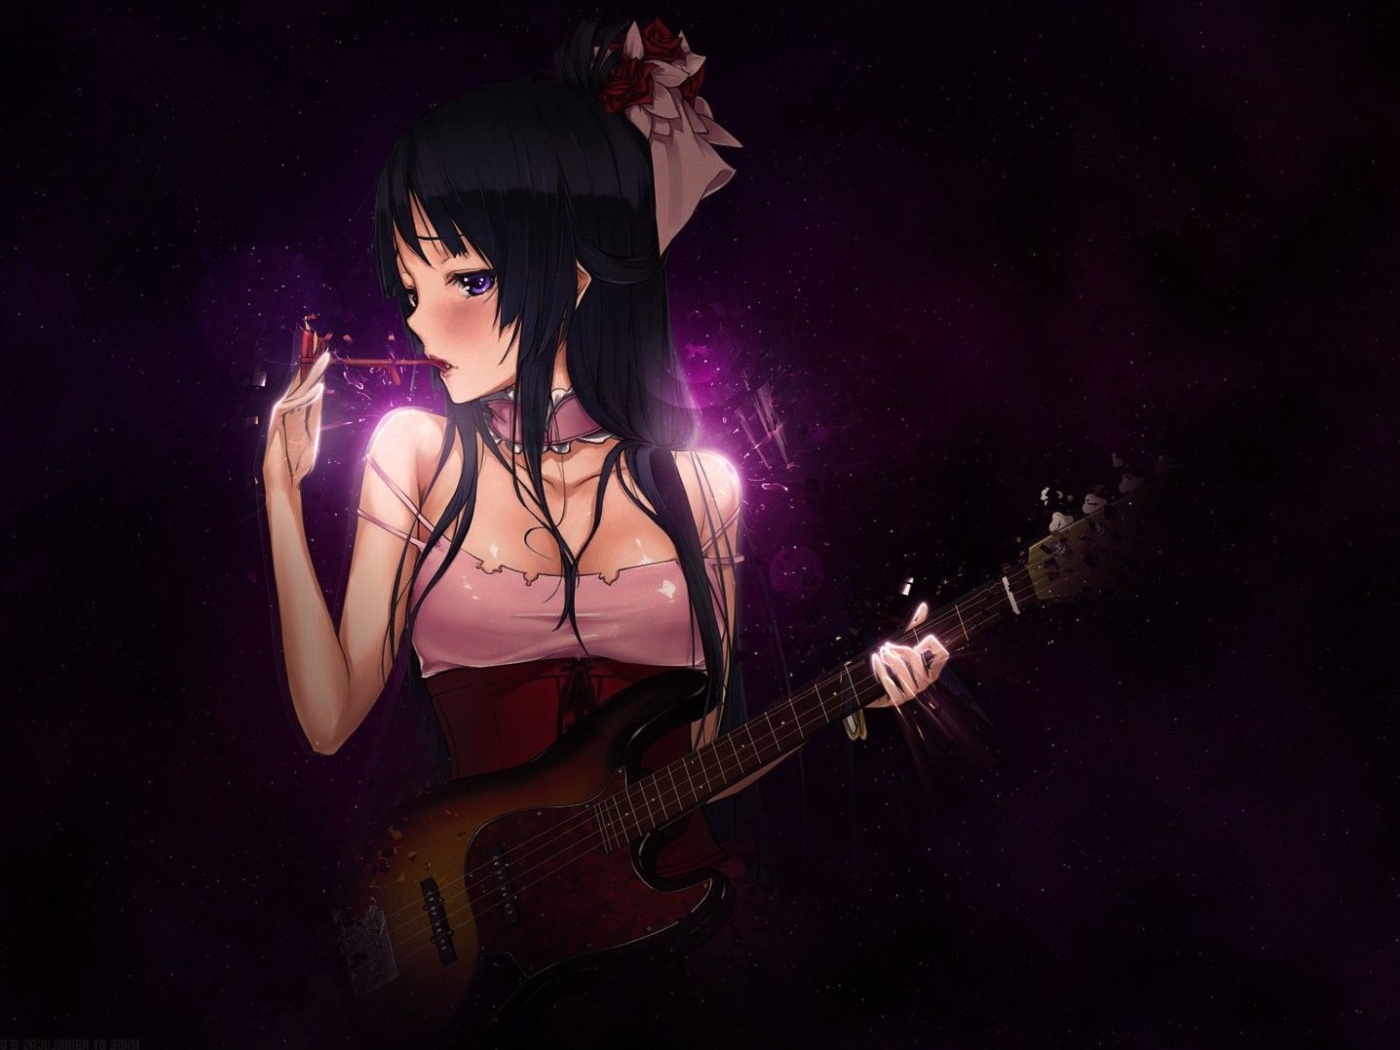 Обои Anime Girl with Guitar 1400x1050